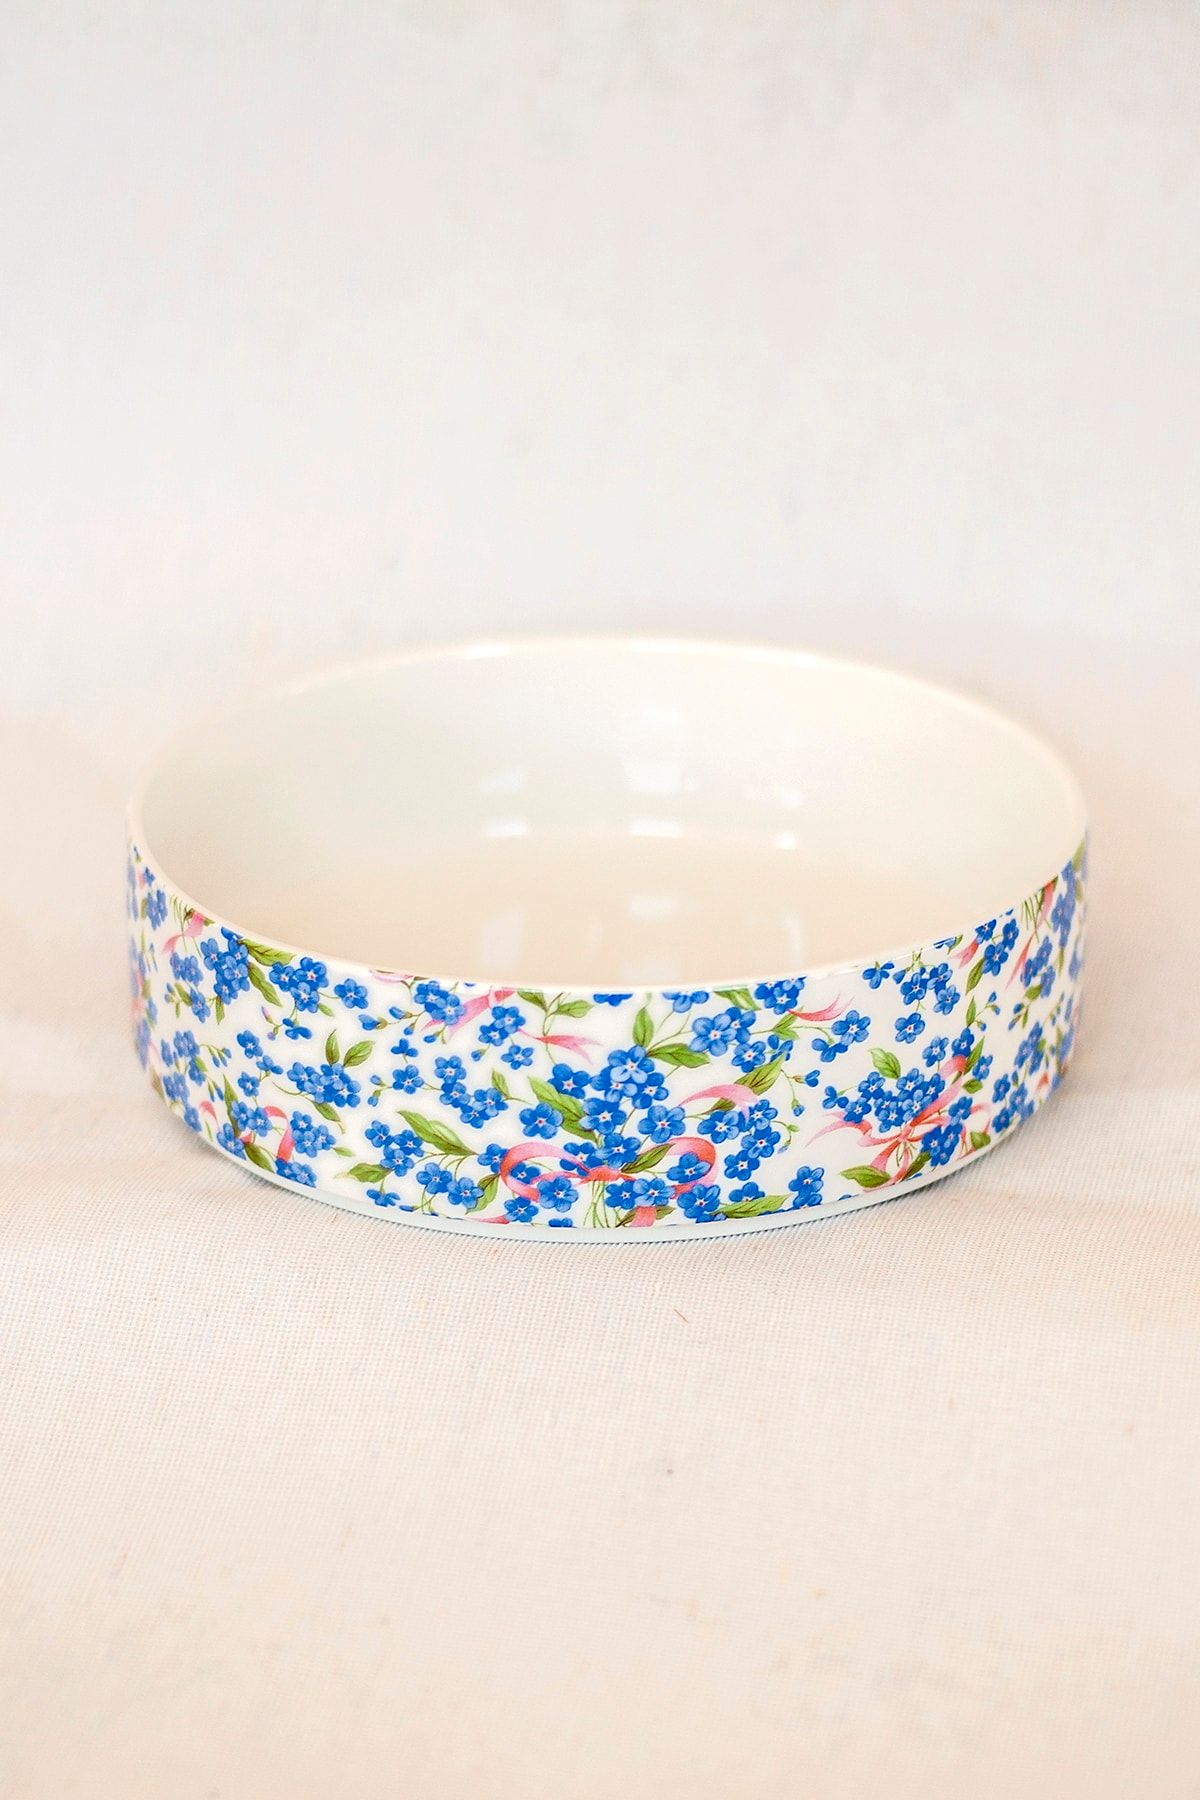 Bursa Porselen Dekor Mavi Çiçek Desen Jumbo Salata Tabağı